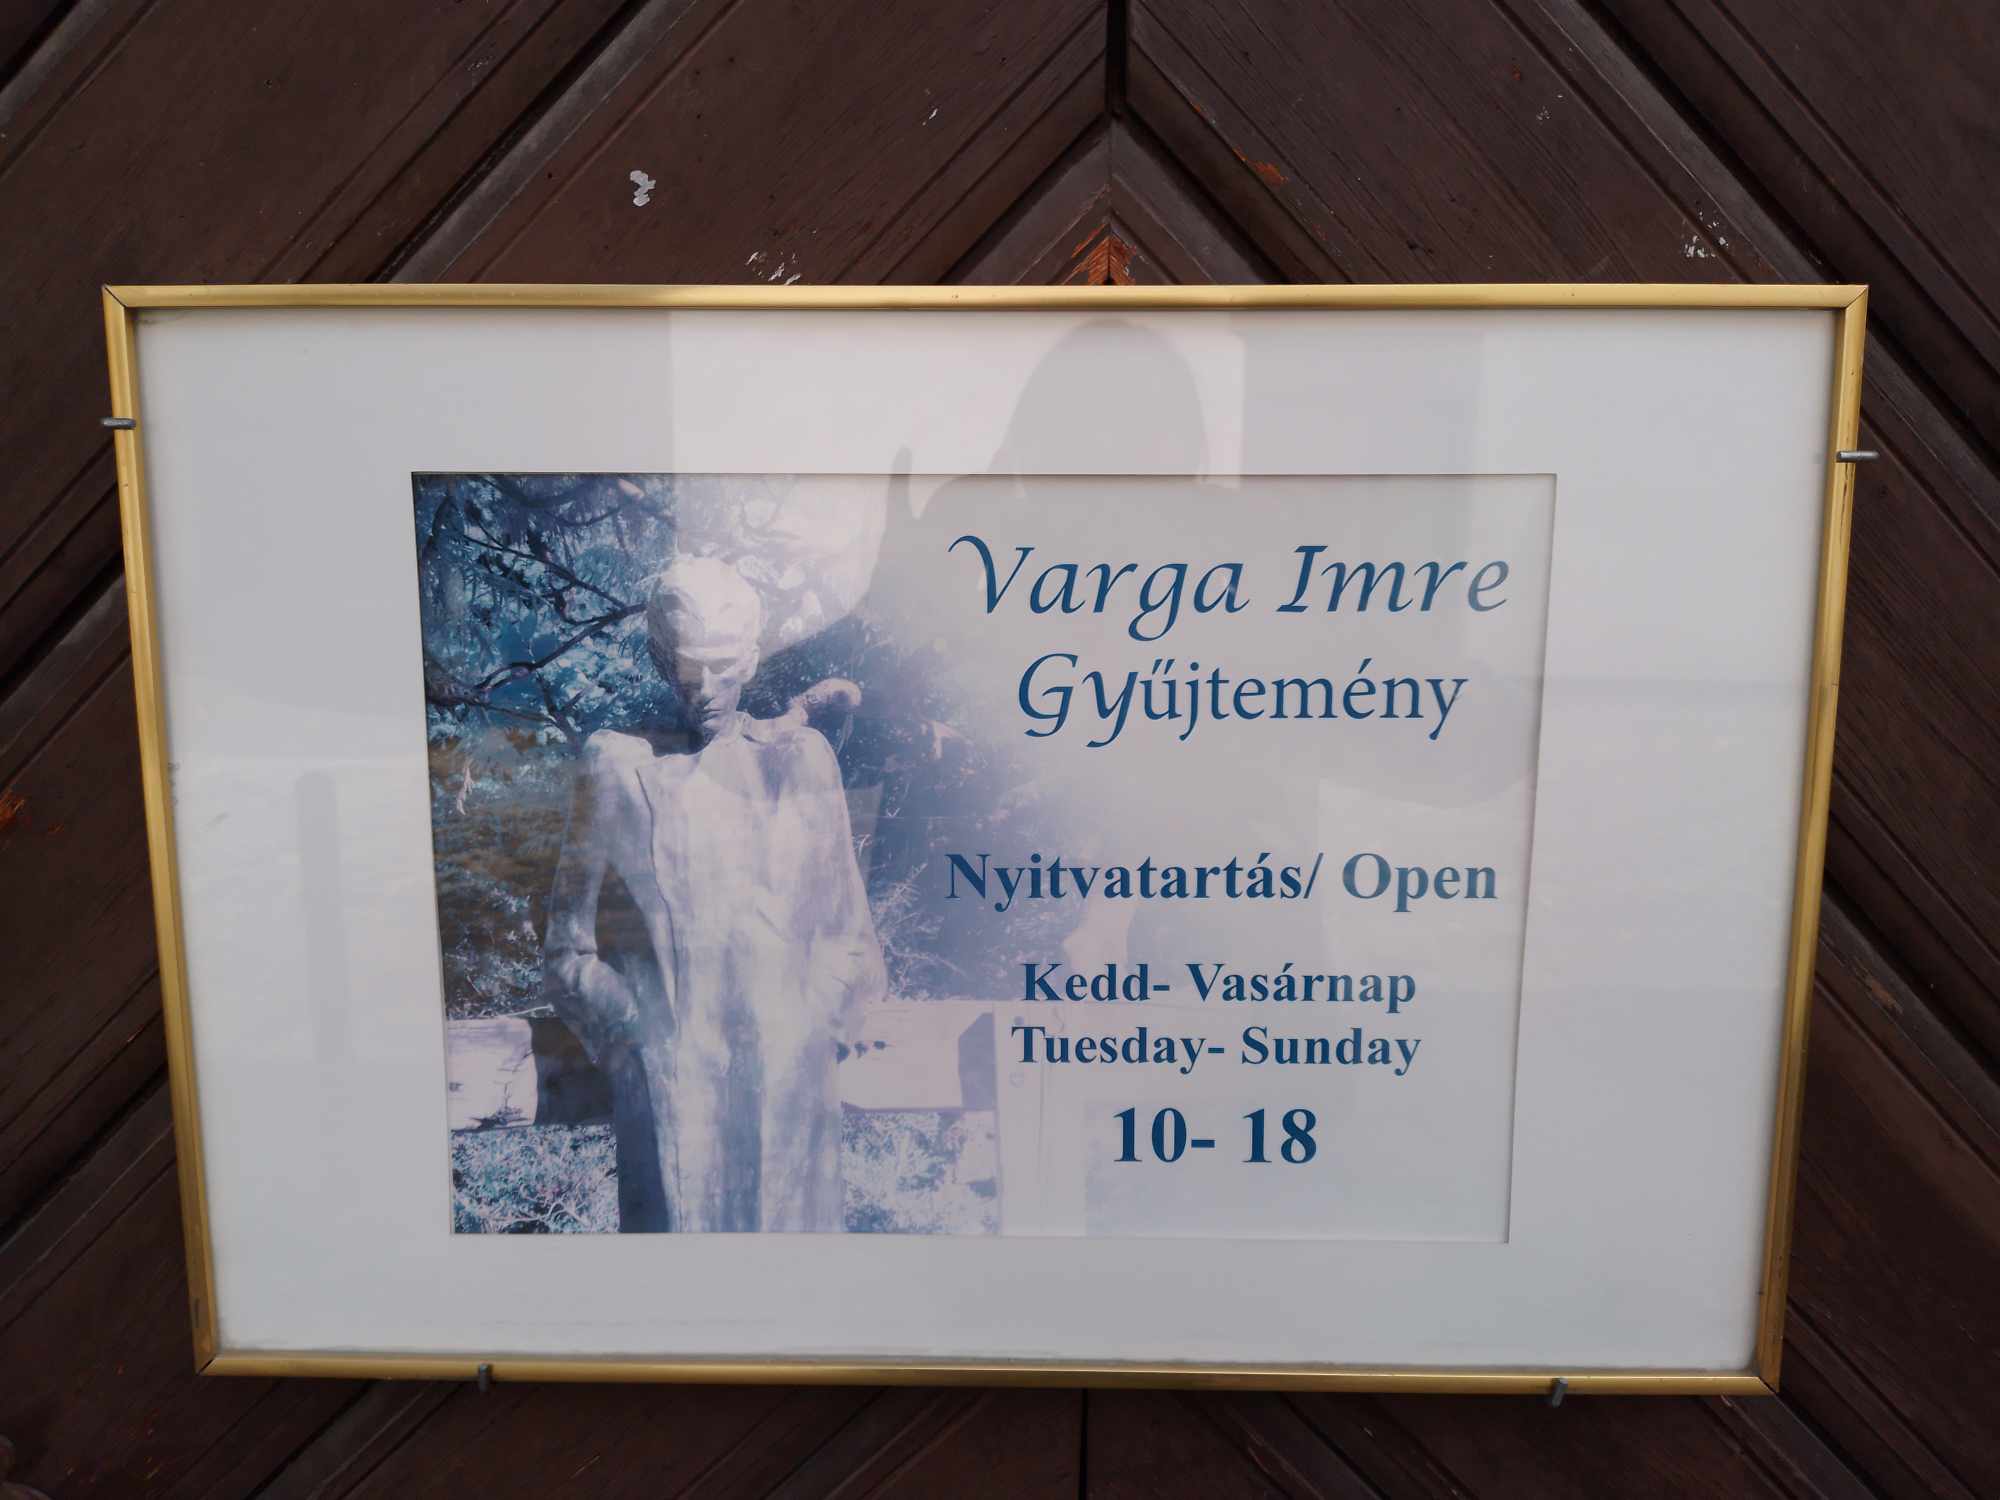 Szeptember 27-én meglátogattuk a Varga Imre Gyűjteményt az Általános Iskola tanulóival